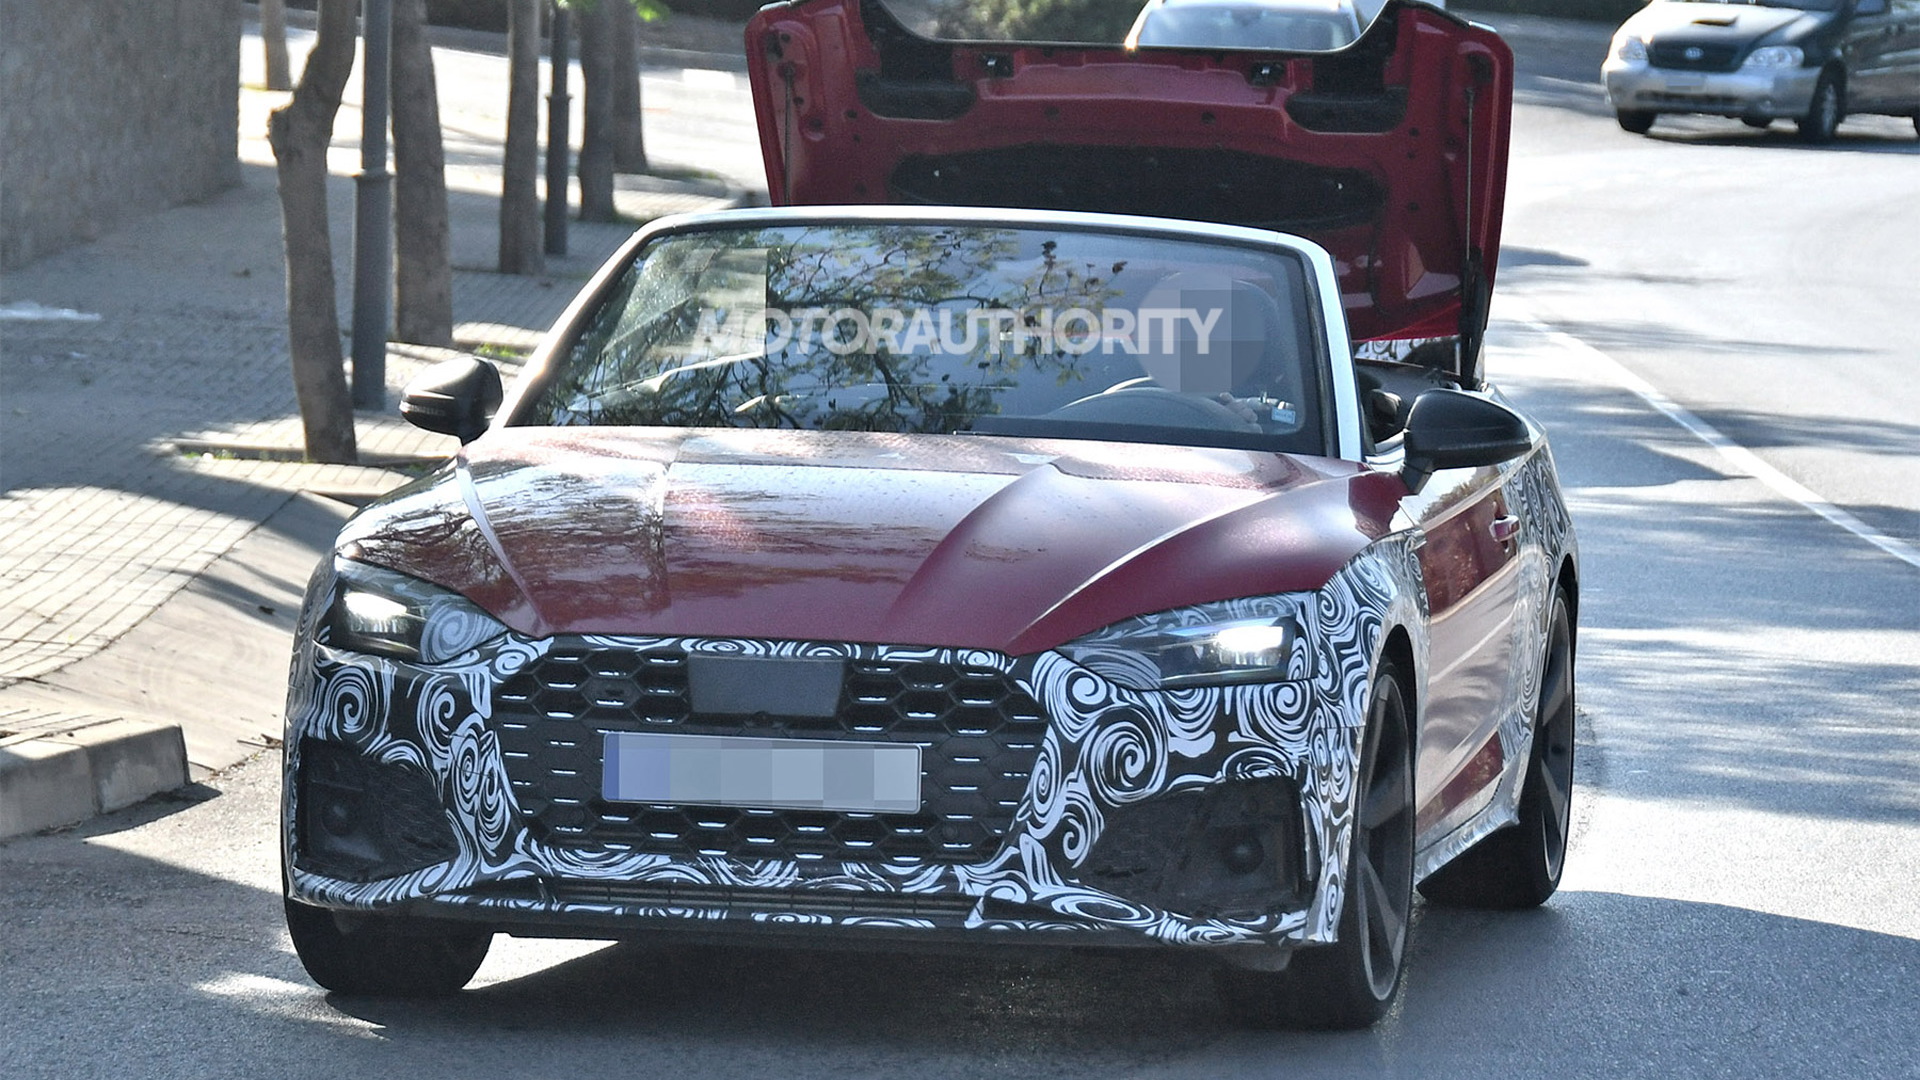 2021 Audi S5 Cabriolet facelift spy shots - Image via S. Baldauf/SB-Medien